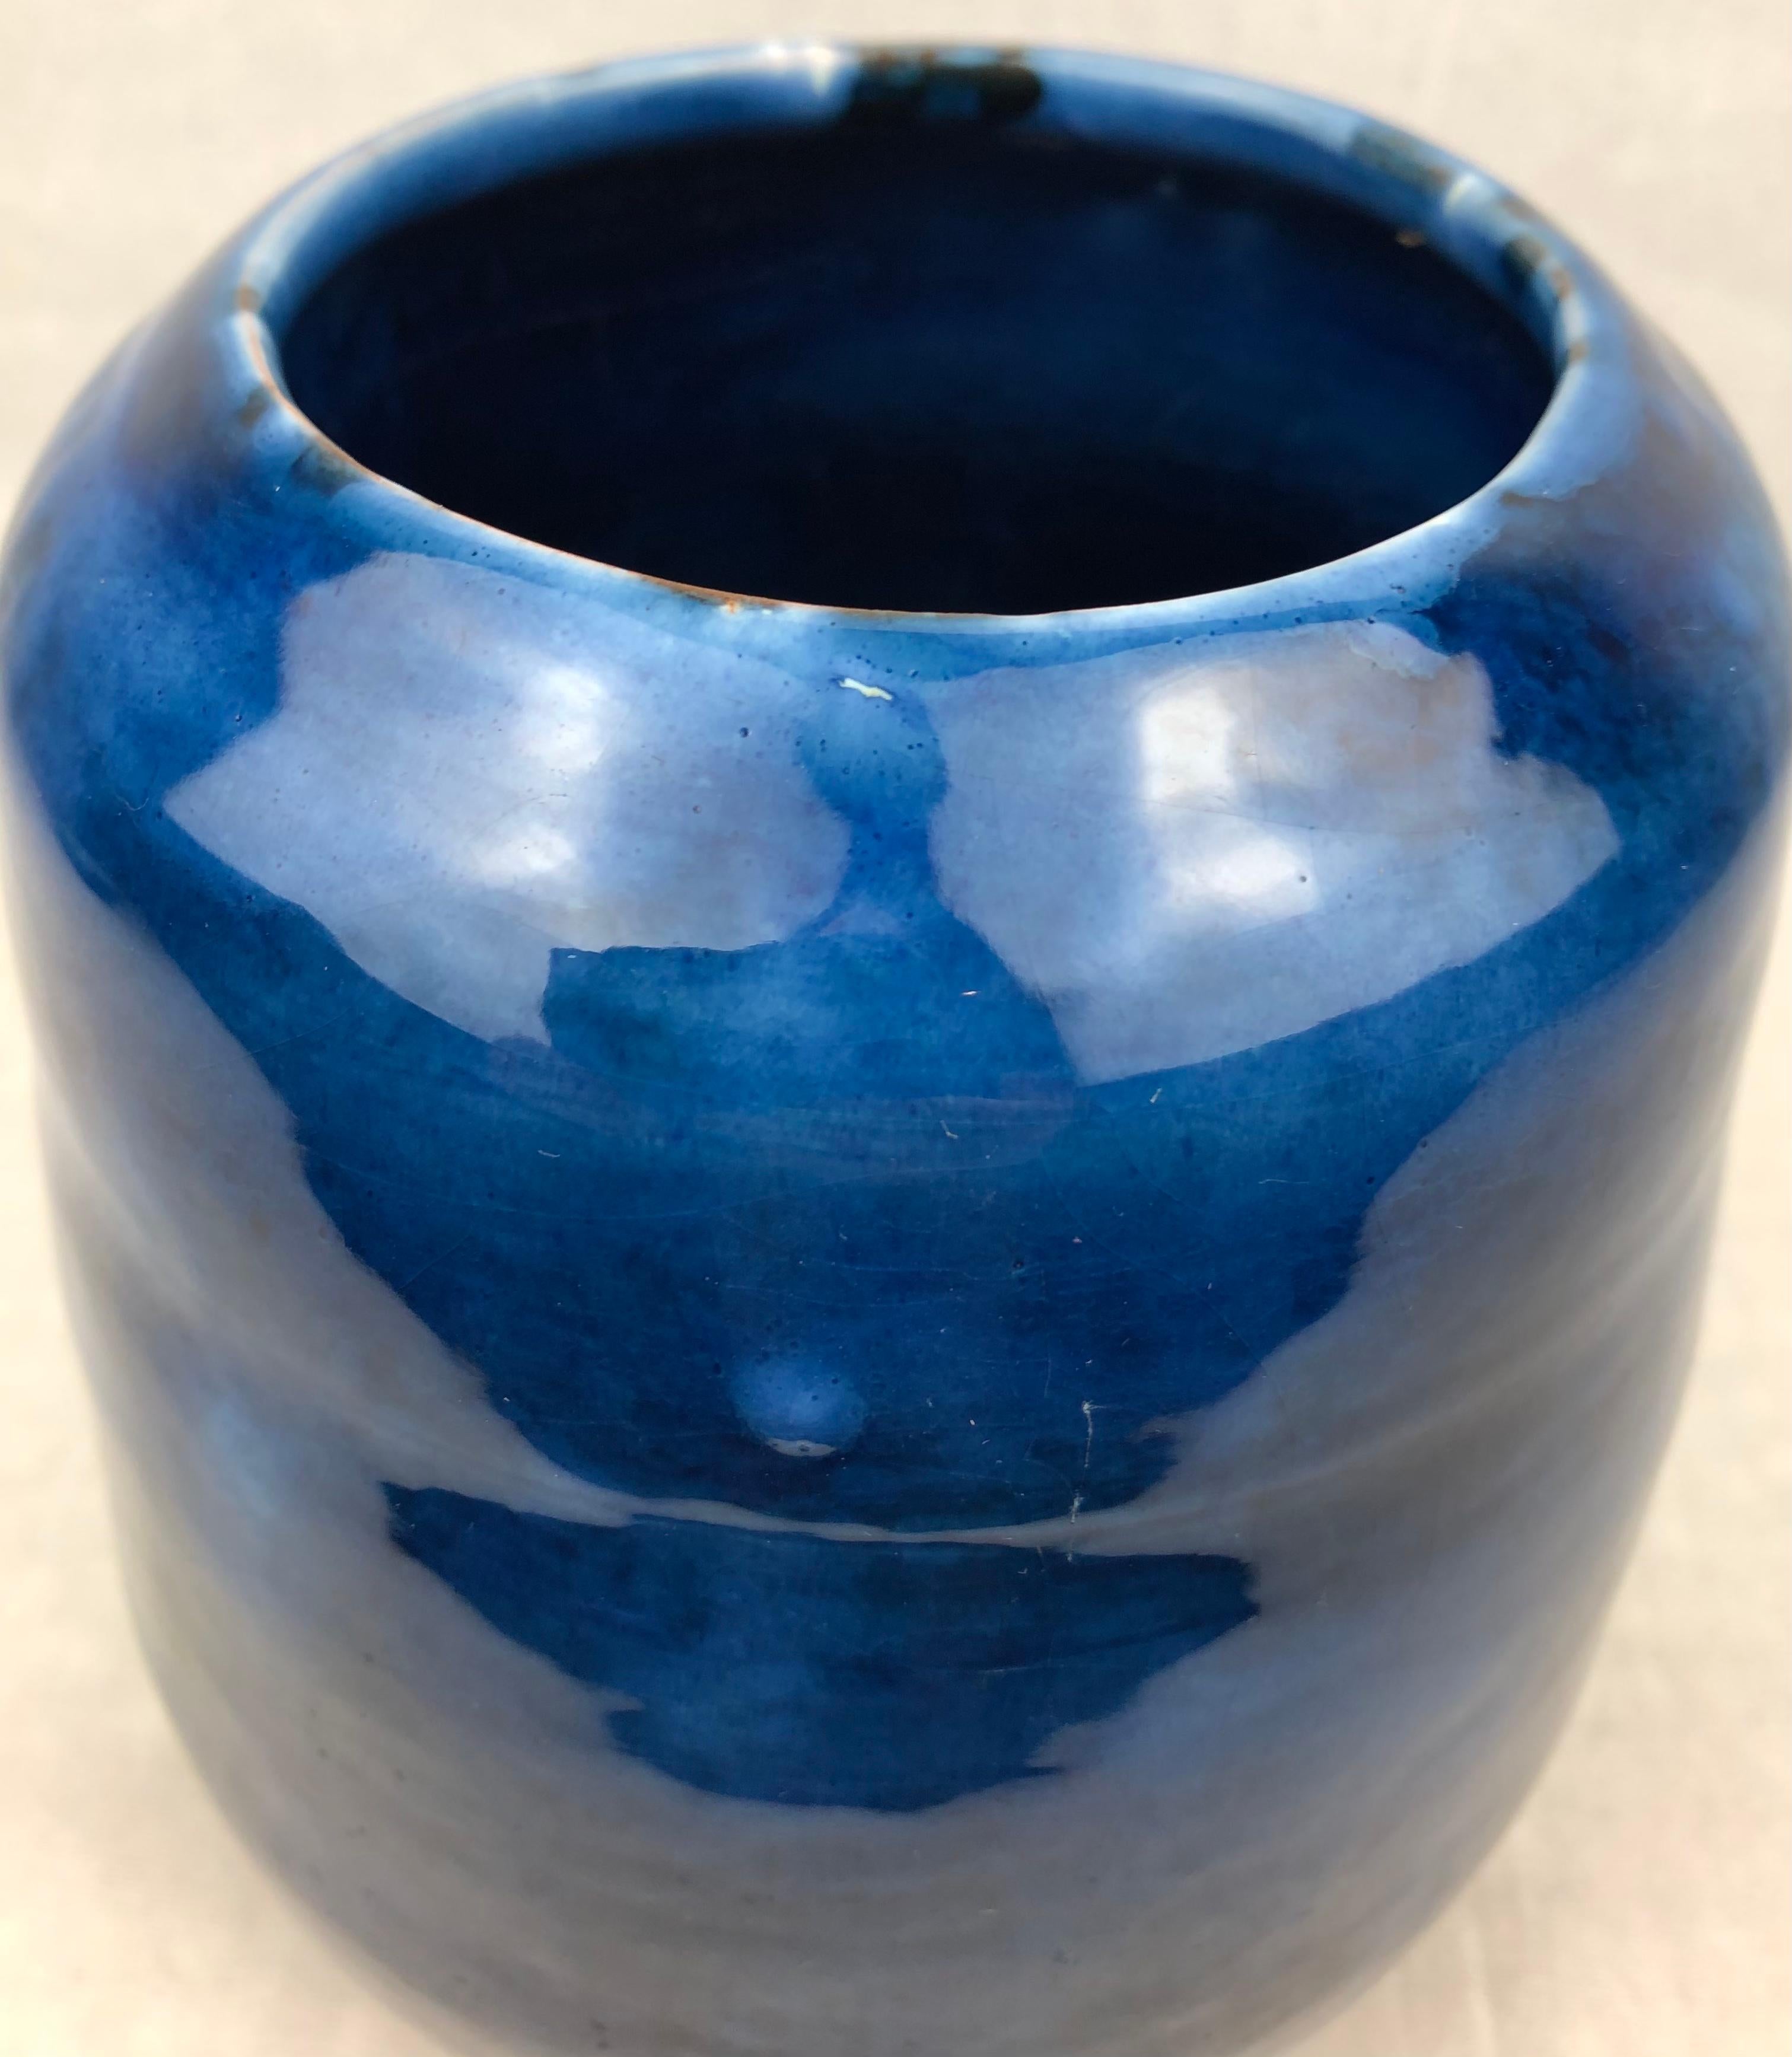 Französische Keramikvase aus der Mitte des Jahrhunderts in einer atemberaubenden kobaltblauen Farbe, glasiert. 
Signiertes Stück, unbekannter Keramikkünstler. 

Dieses wunderschöne Dekorationsobjekt bereichert jeden Tisch, jedes Regal und jede